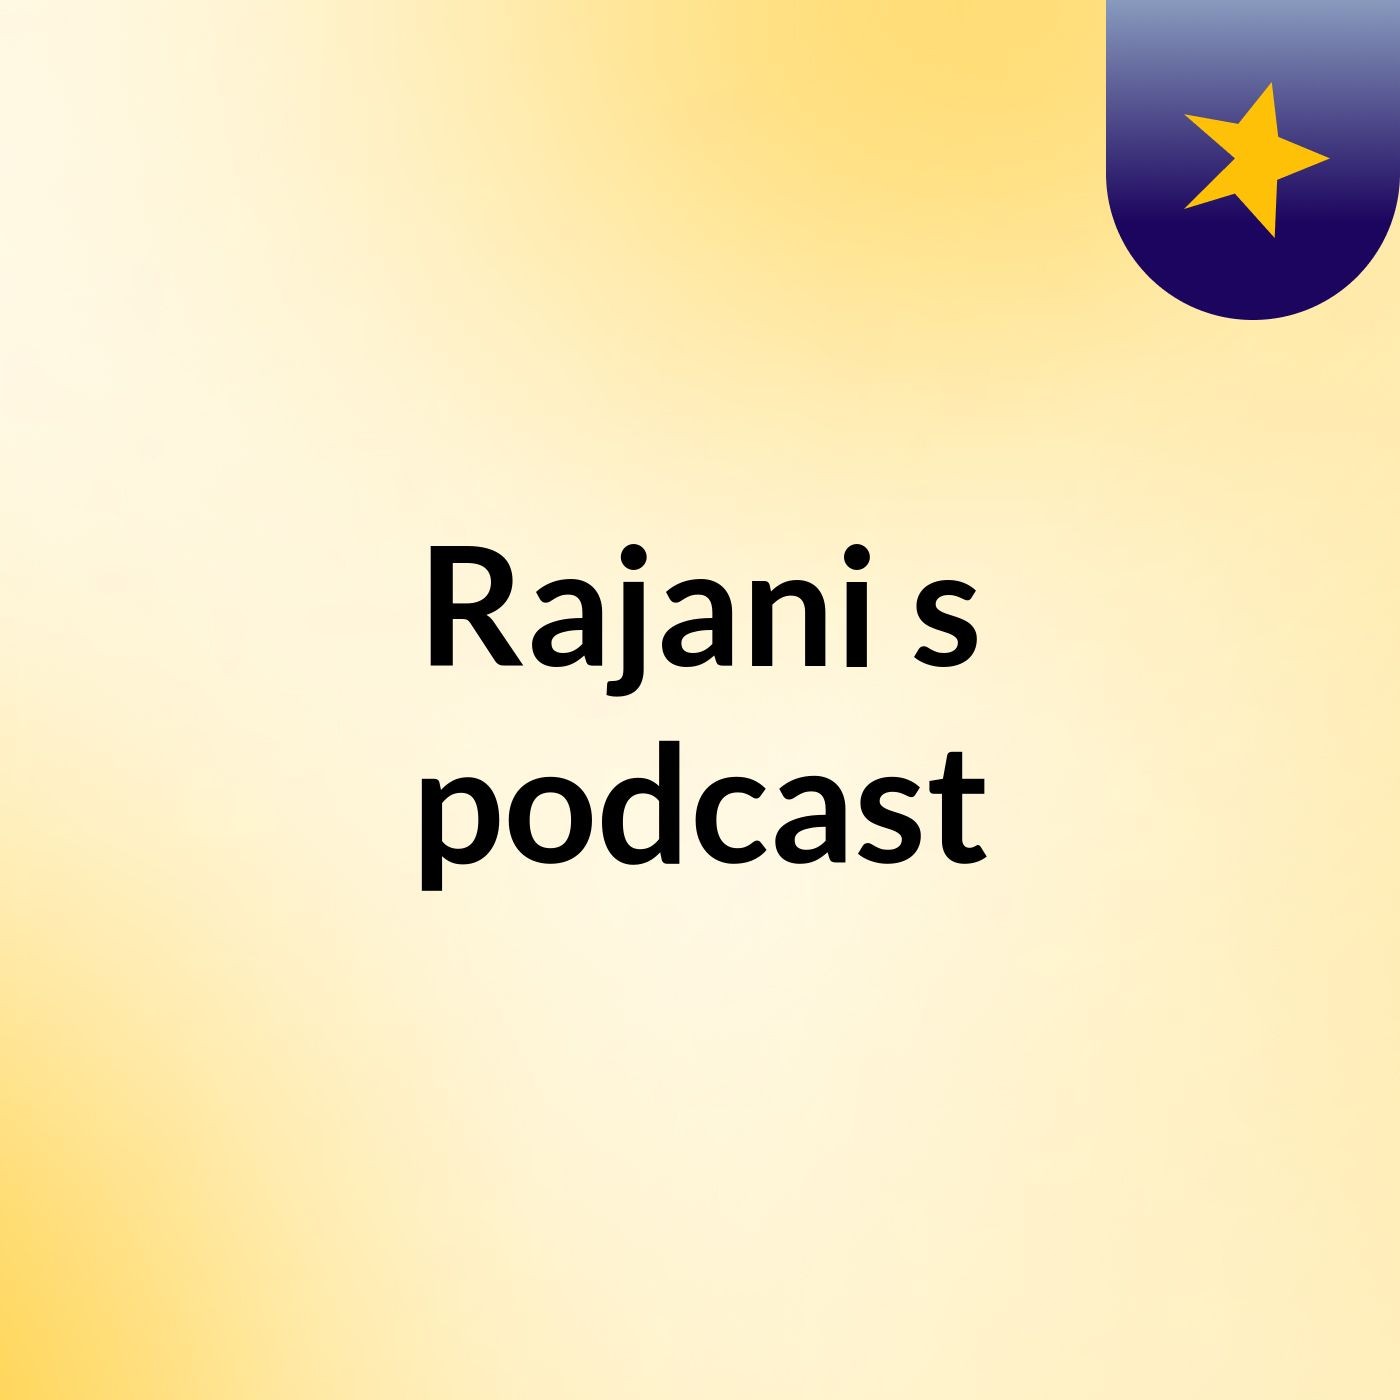 Episode 2 - Rajani's podcast